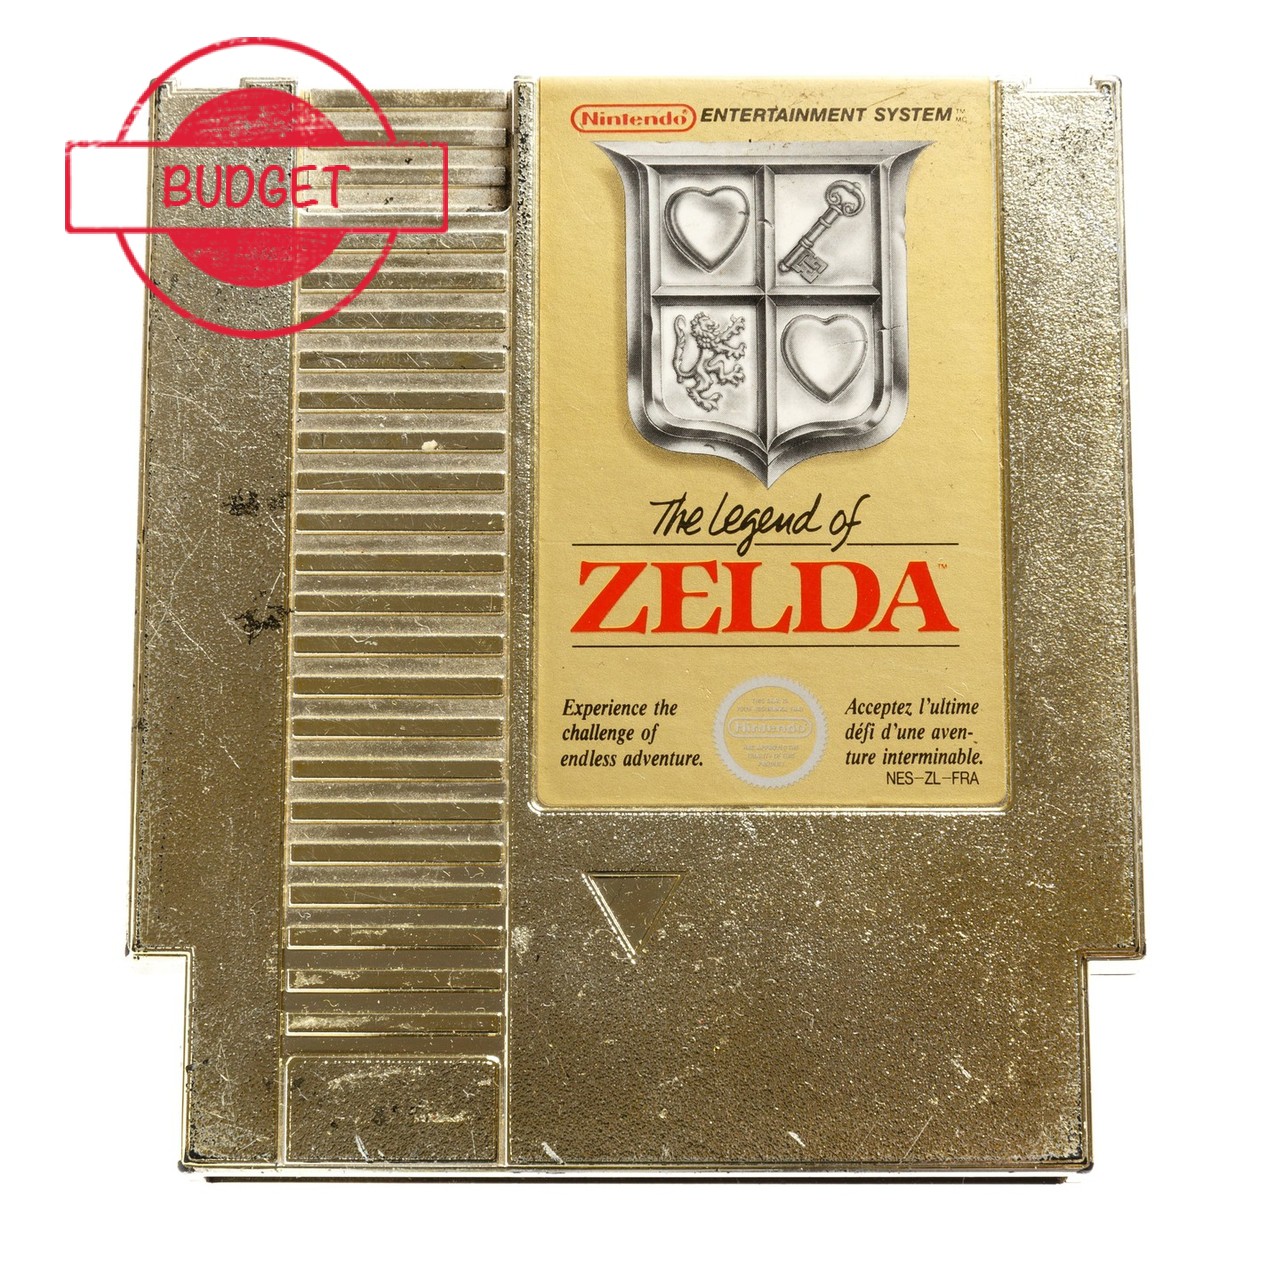 The Legend of Zelda - Budget - Nintendo NES Games